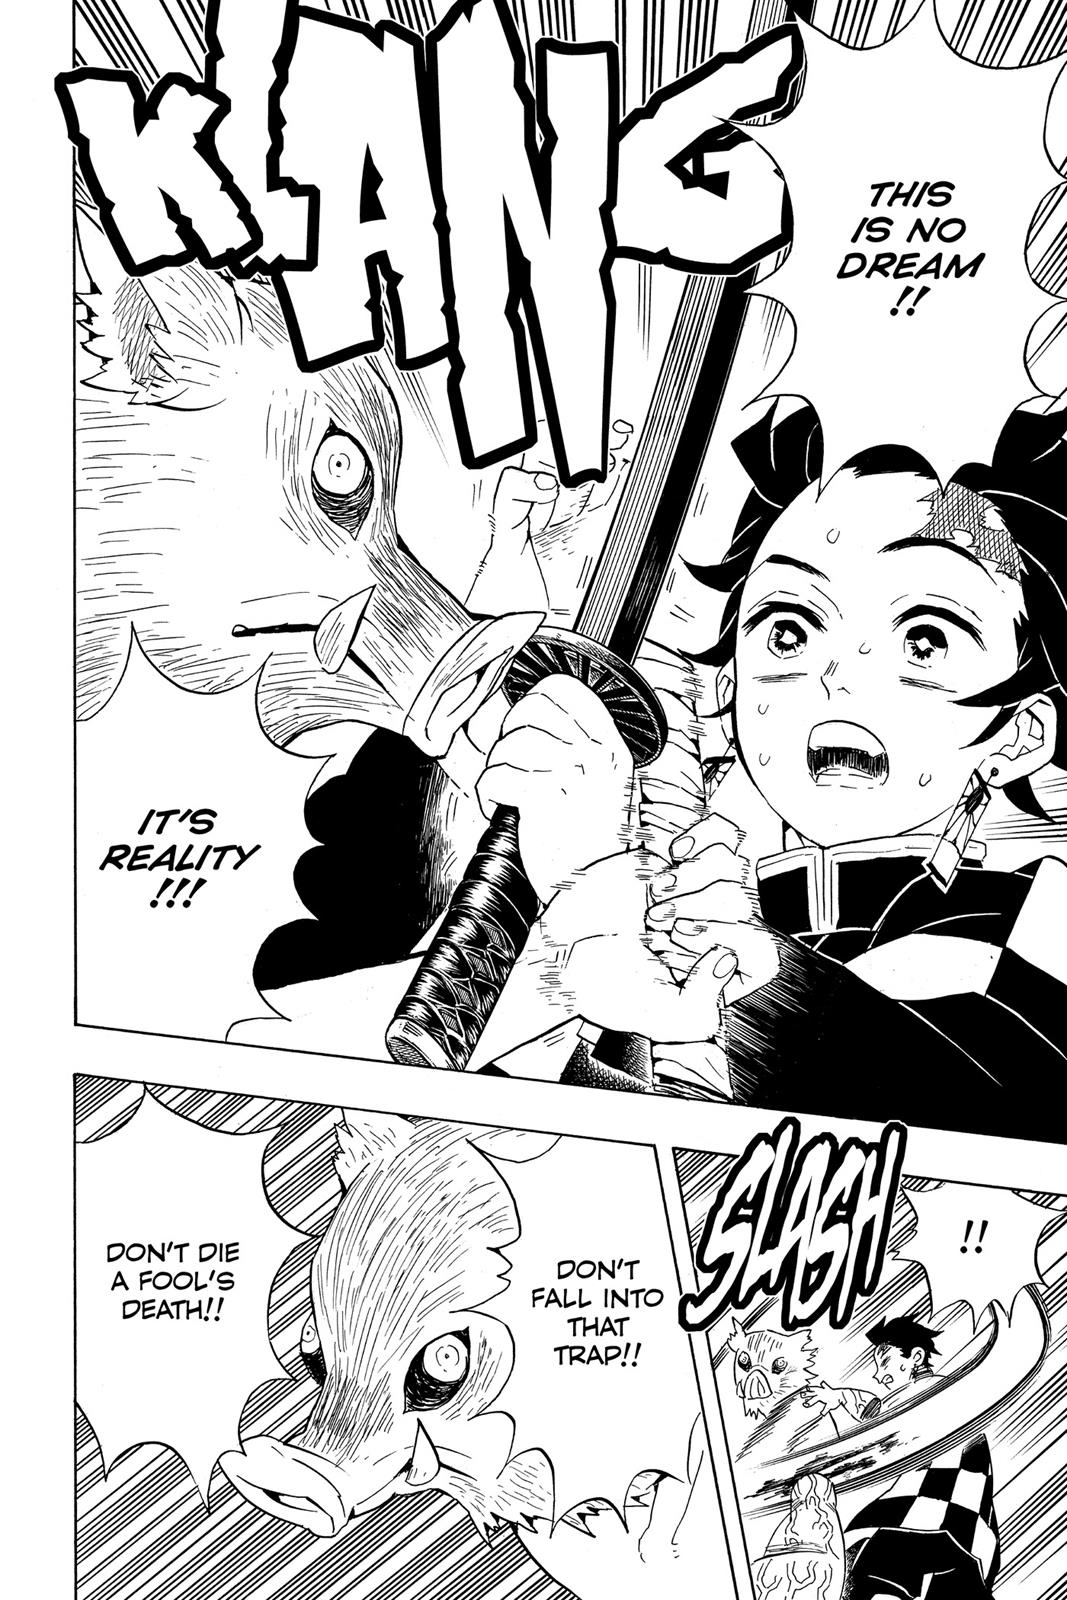 Demon Slayer Manga Manga Chapter - 61 - image 11